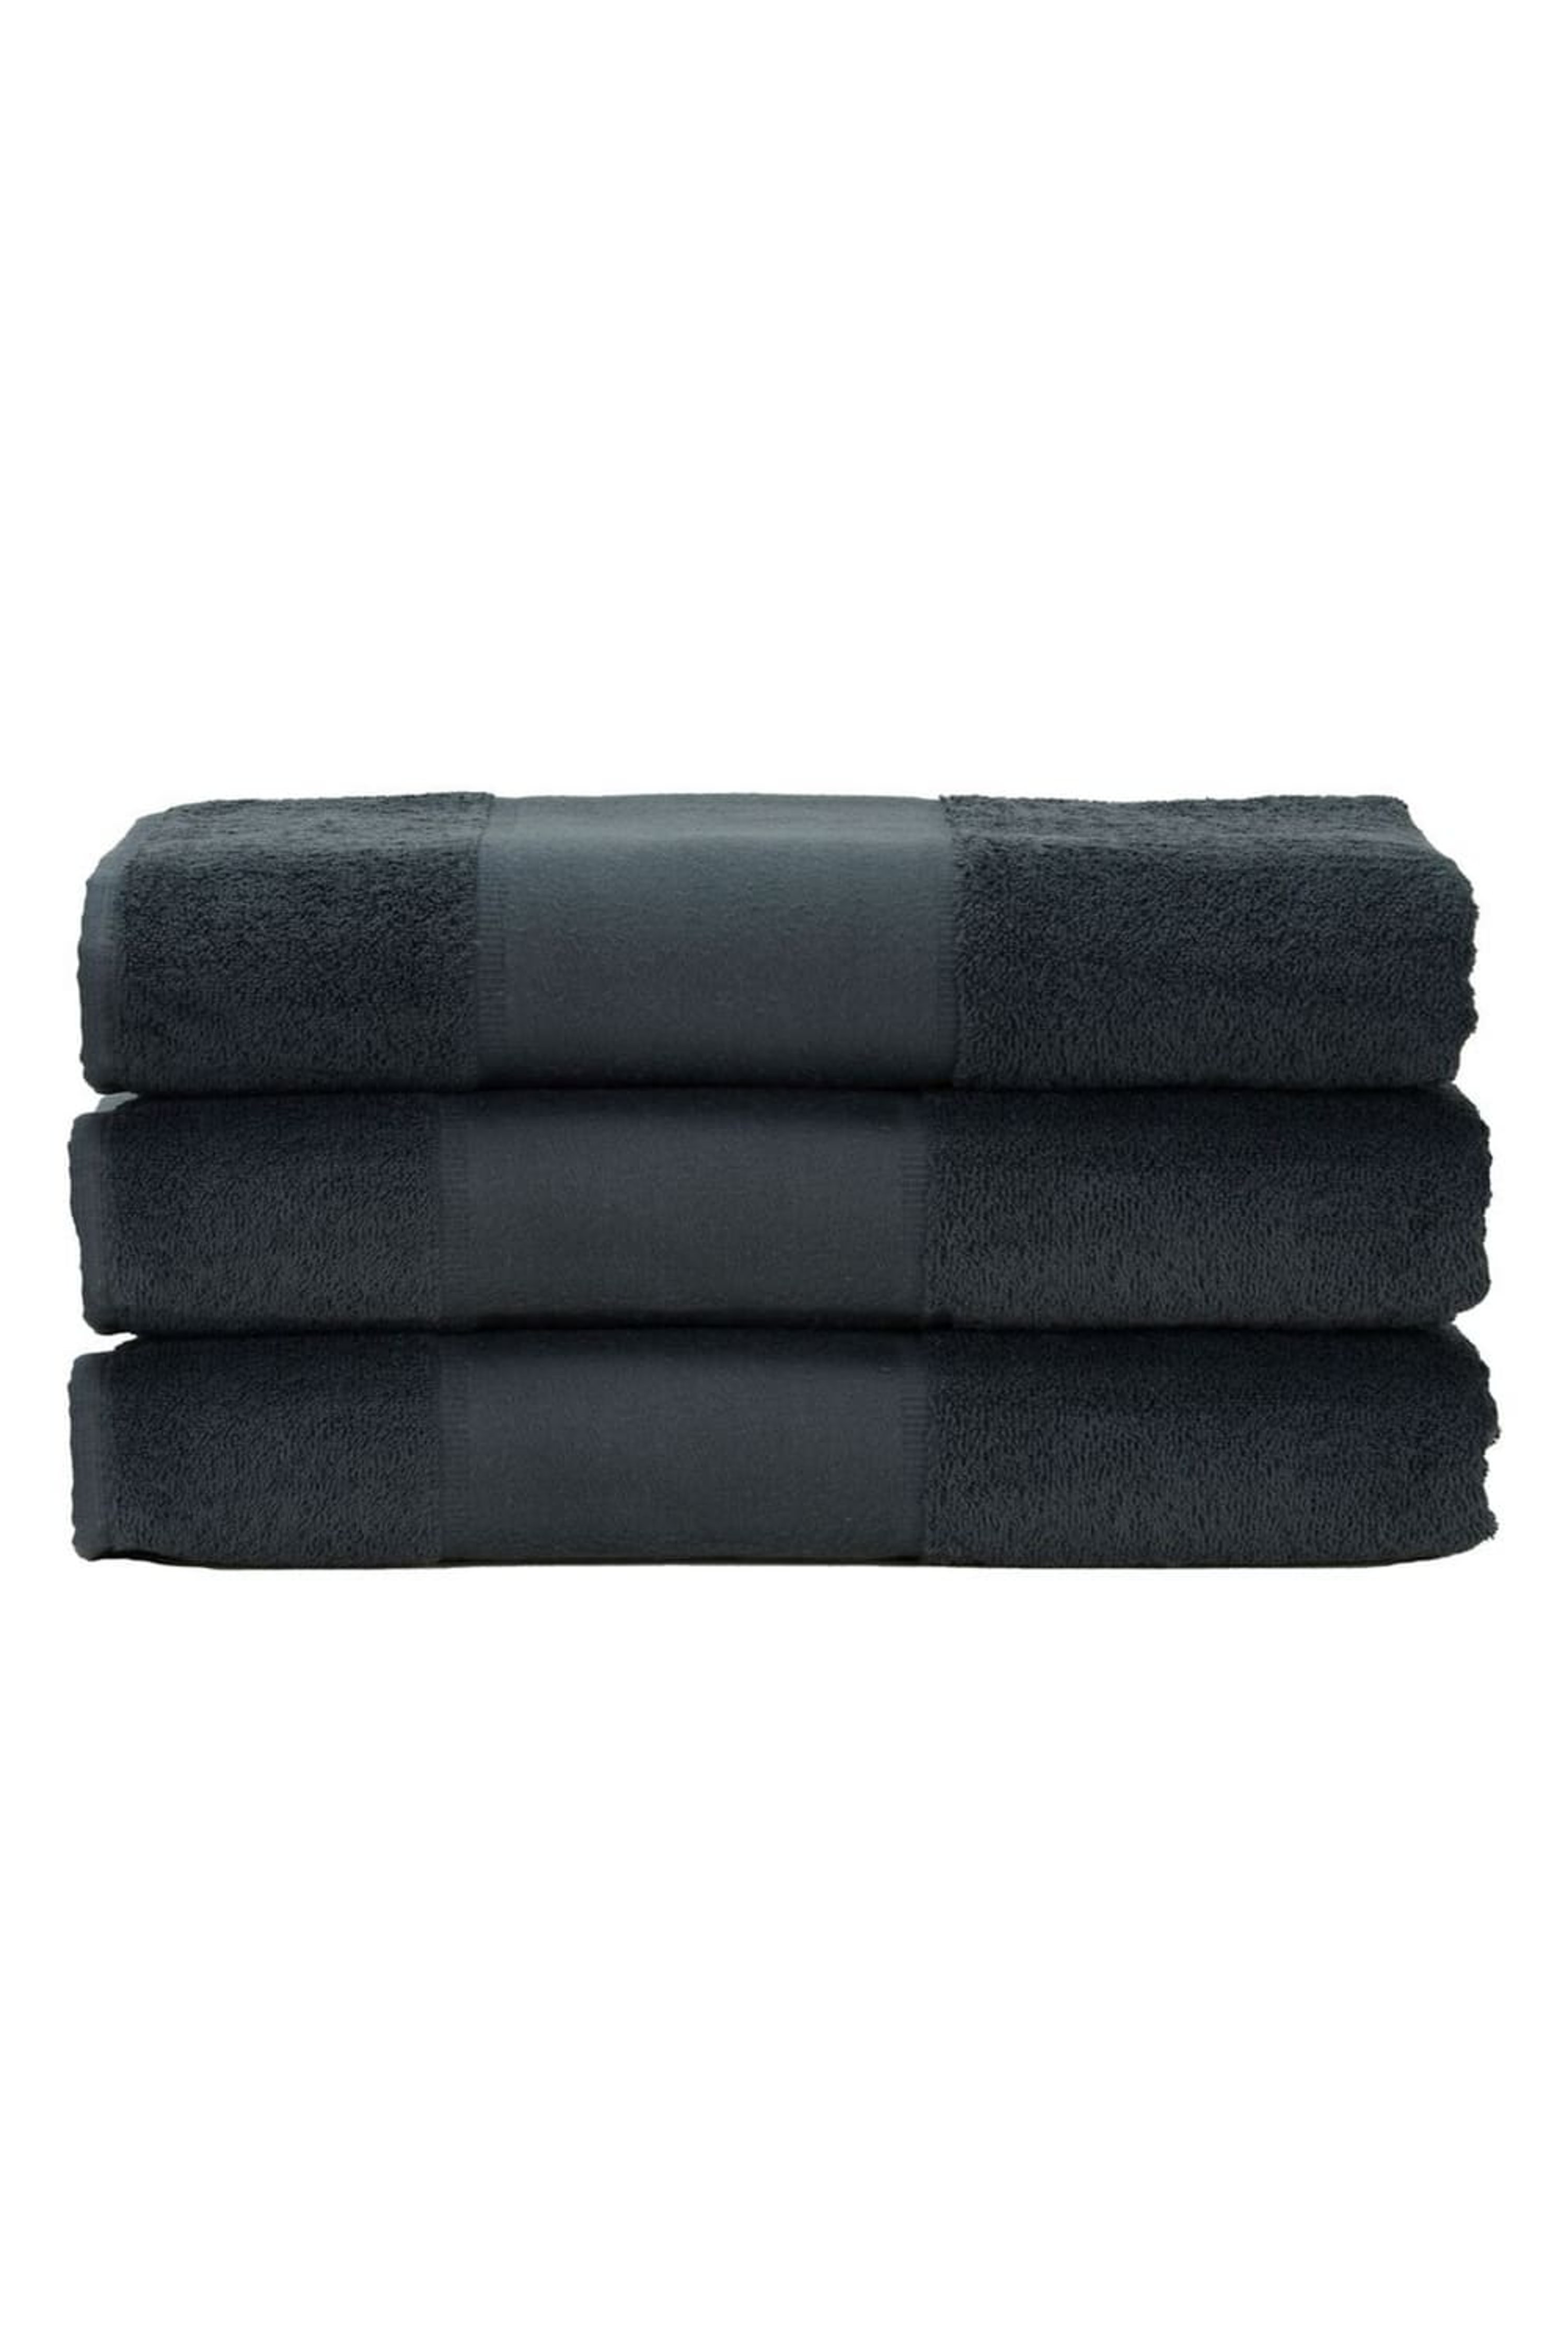 A&R TOWELS A&R TOWELS A&R TOWELS PRINT-ME HAND TOWEL (GRAPHITE) (ONE SIZE)